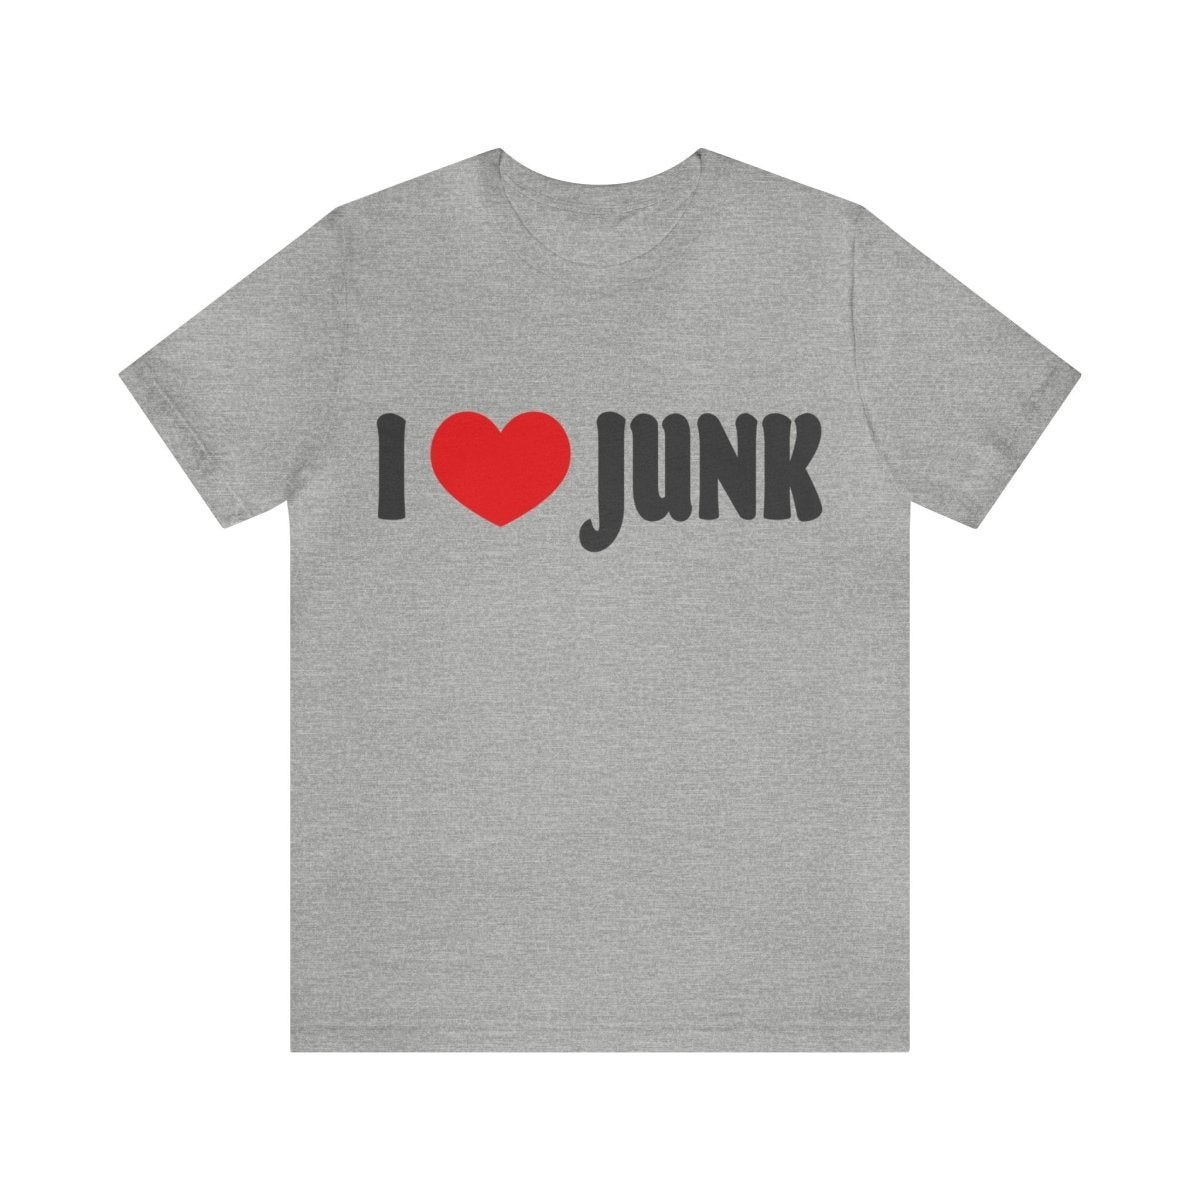 I Love Junk Premium T-Shirt, Antiques, Garage Sales, Flea Markets, Junkin' Genius Shopper